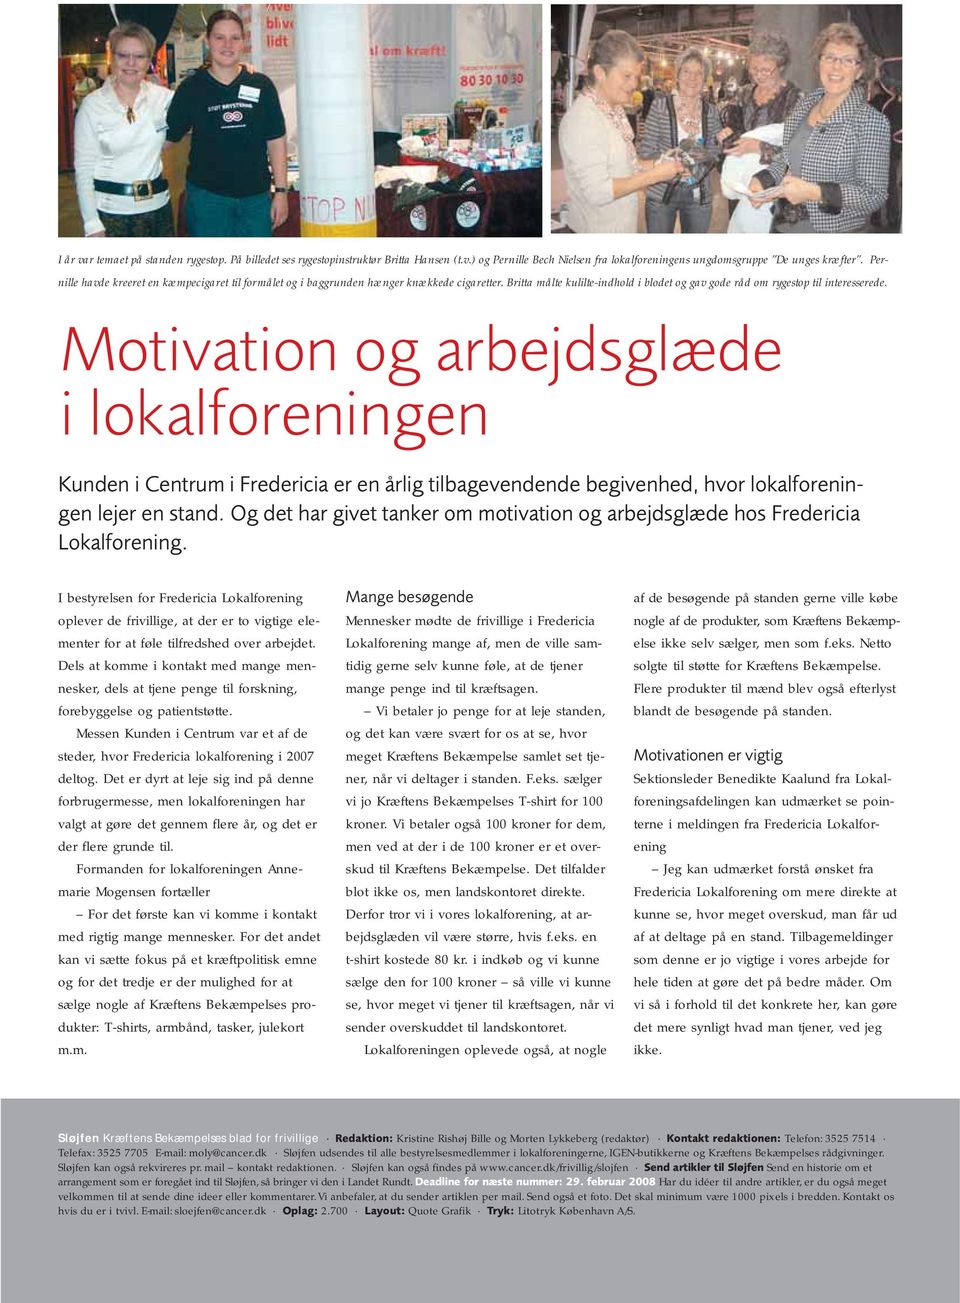 Motivation og arbejdsglæde i lokalforeningen Kunden i Centrum i Fredericia er en årlig tilbagevendende begivenhed, hvor lokalforeningen lejer en stand.